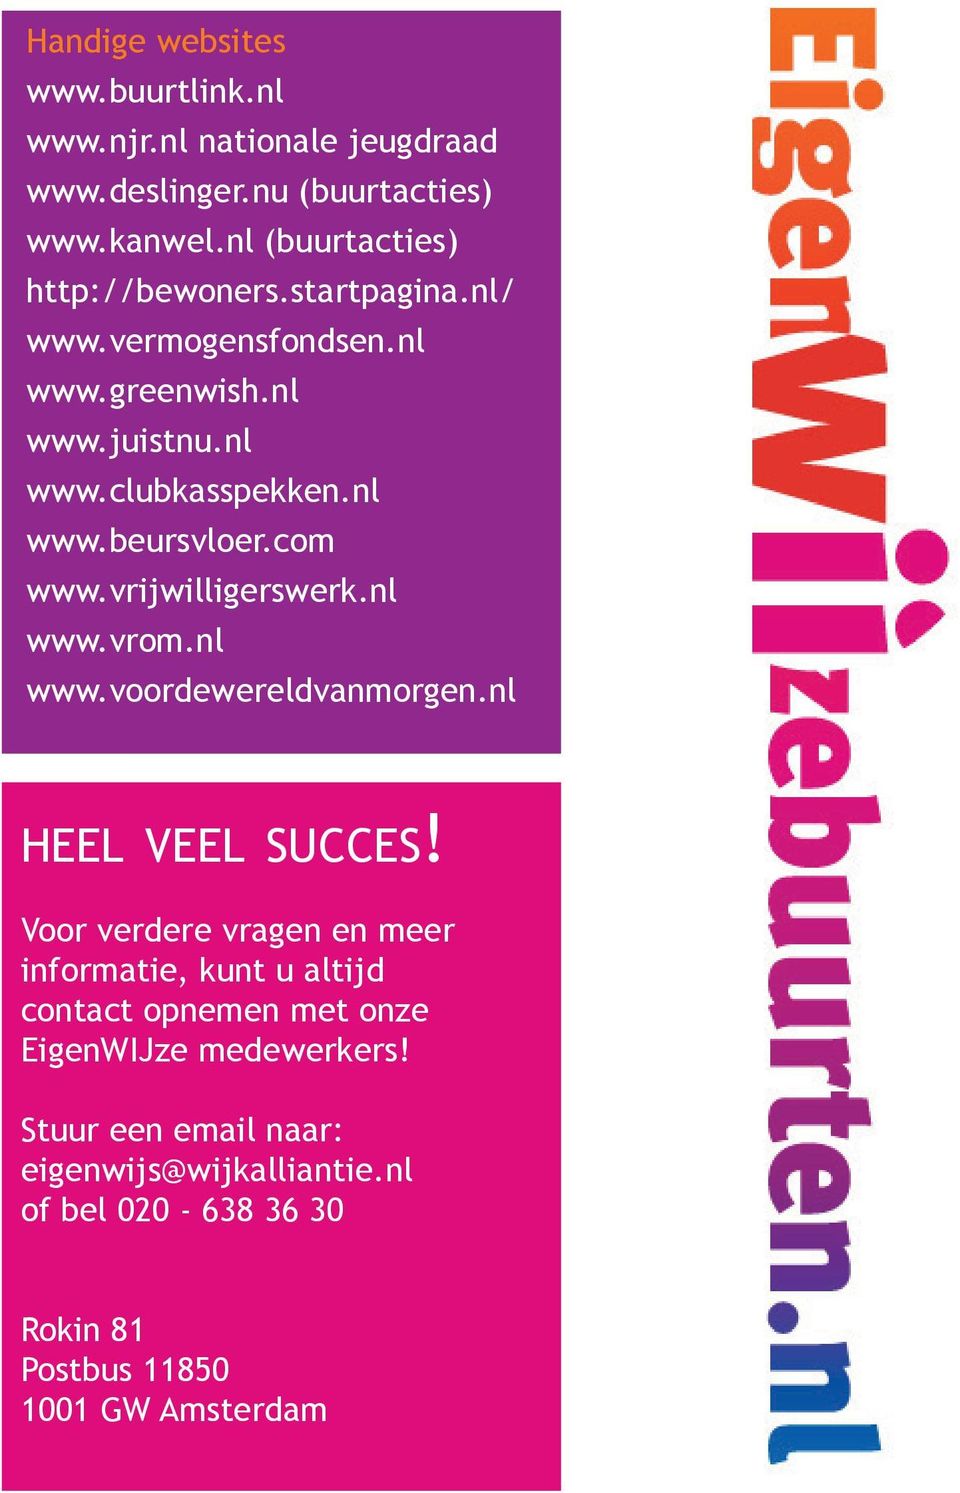 com www.vrijwilligerswerk.nl www.vrom.nl www.voordewereldvanmorgen.nl heel veel succes!